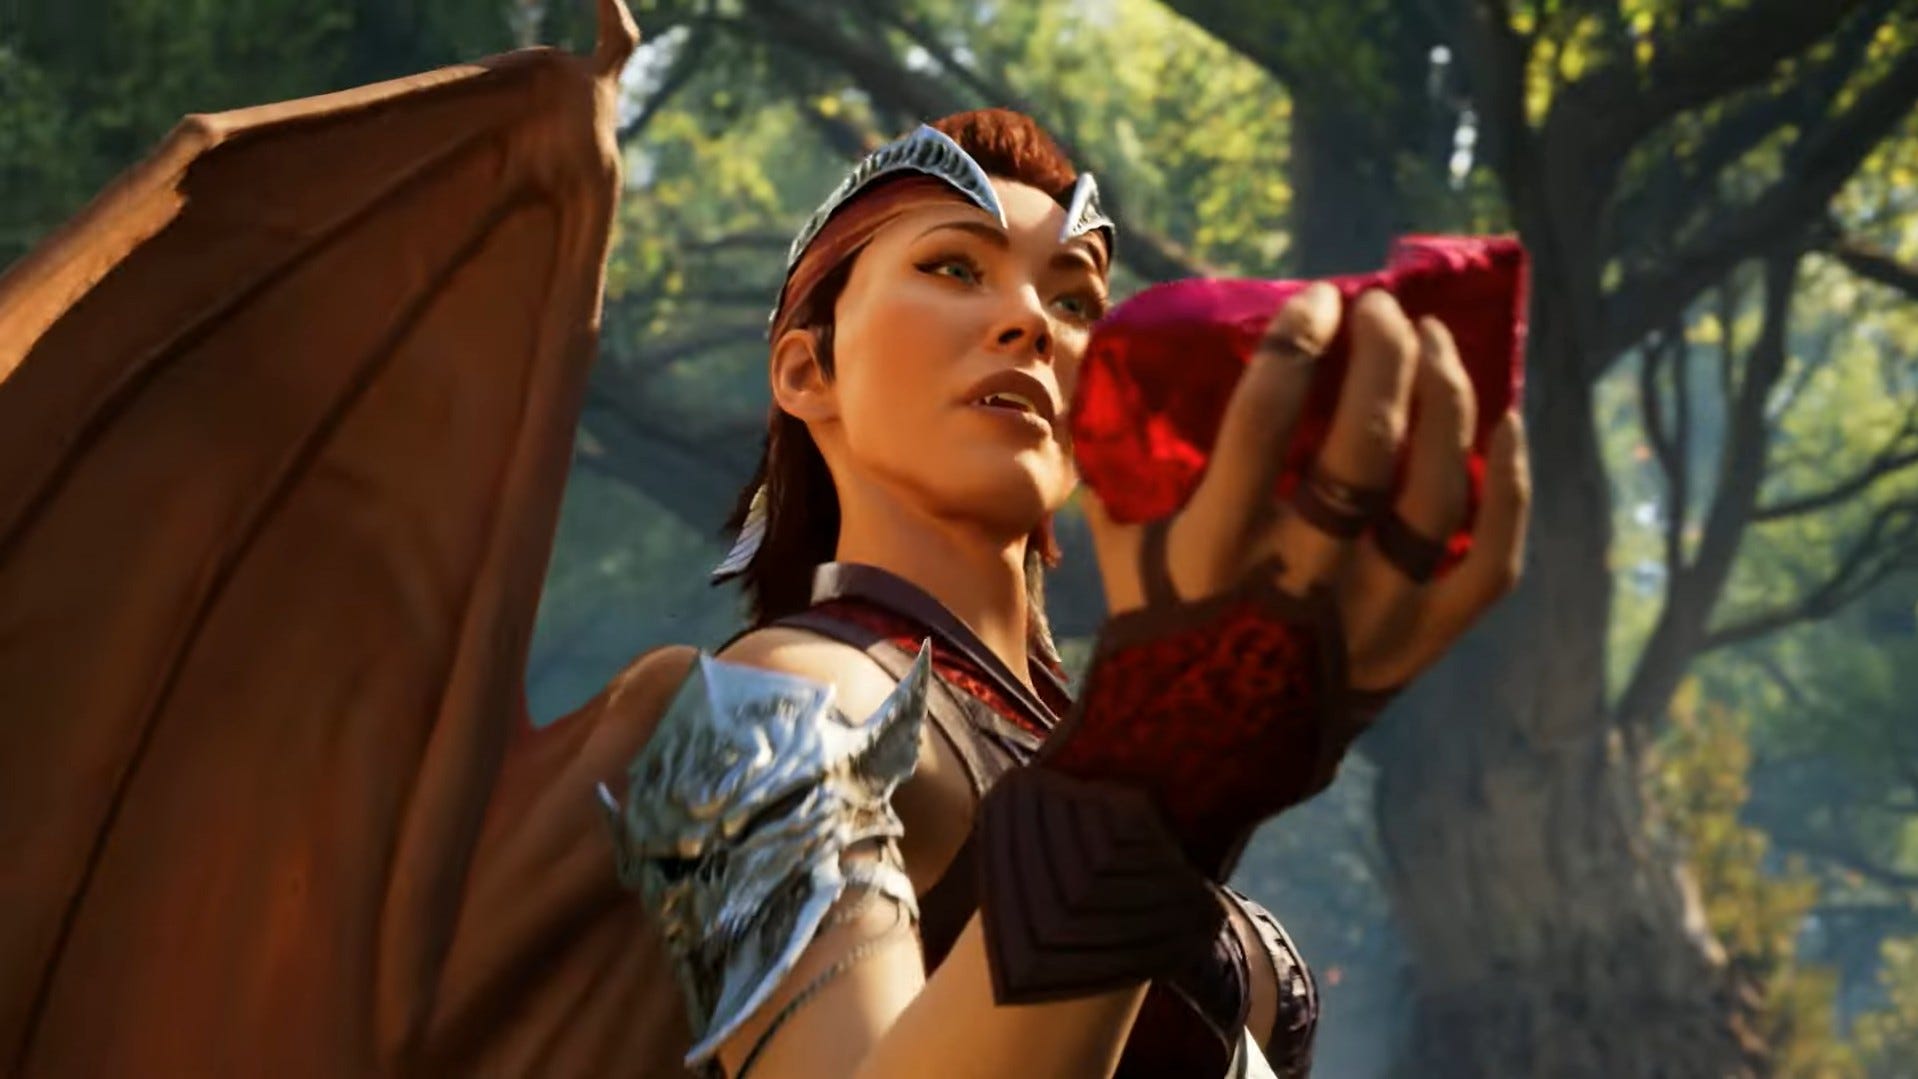 Megan Fox announced as Mortal Kombat 1's blood-thirsty Nitara - Gaming ...